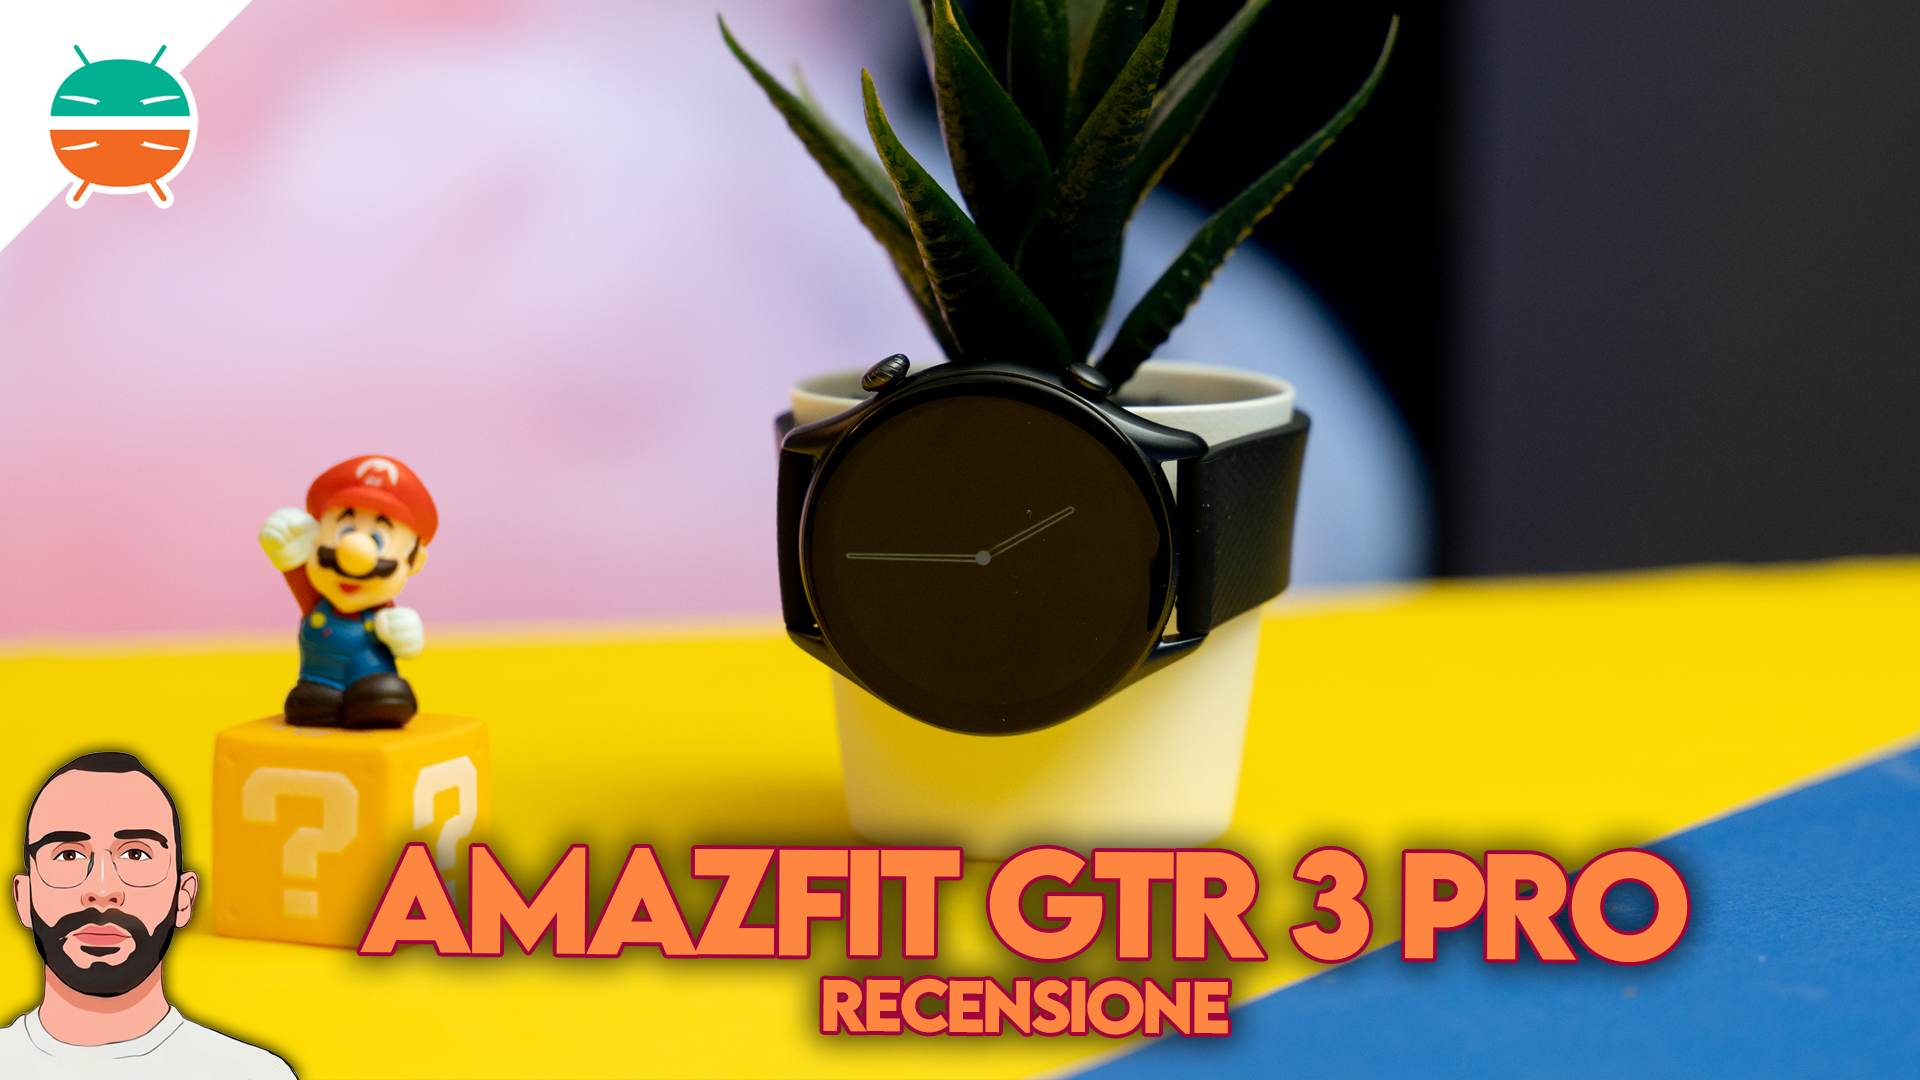 Amazfit GTR 3 Pro review